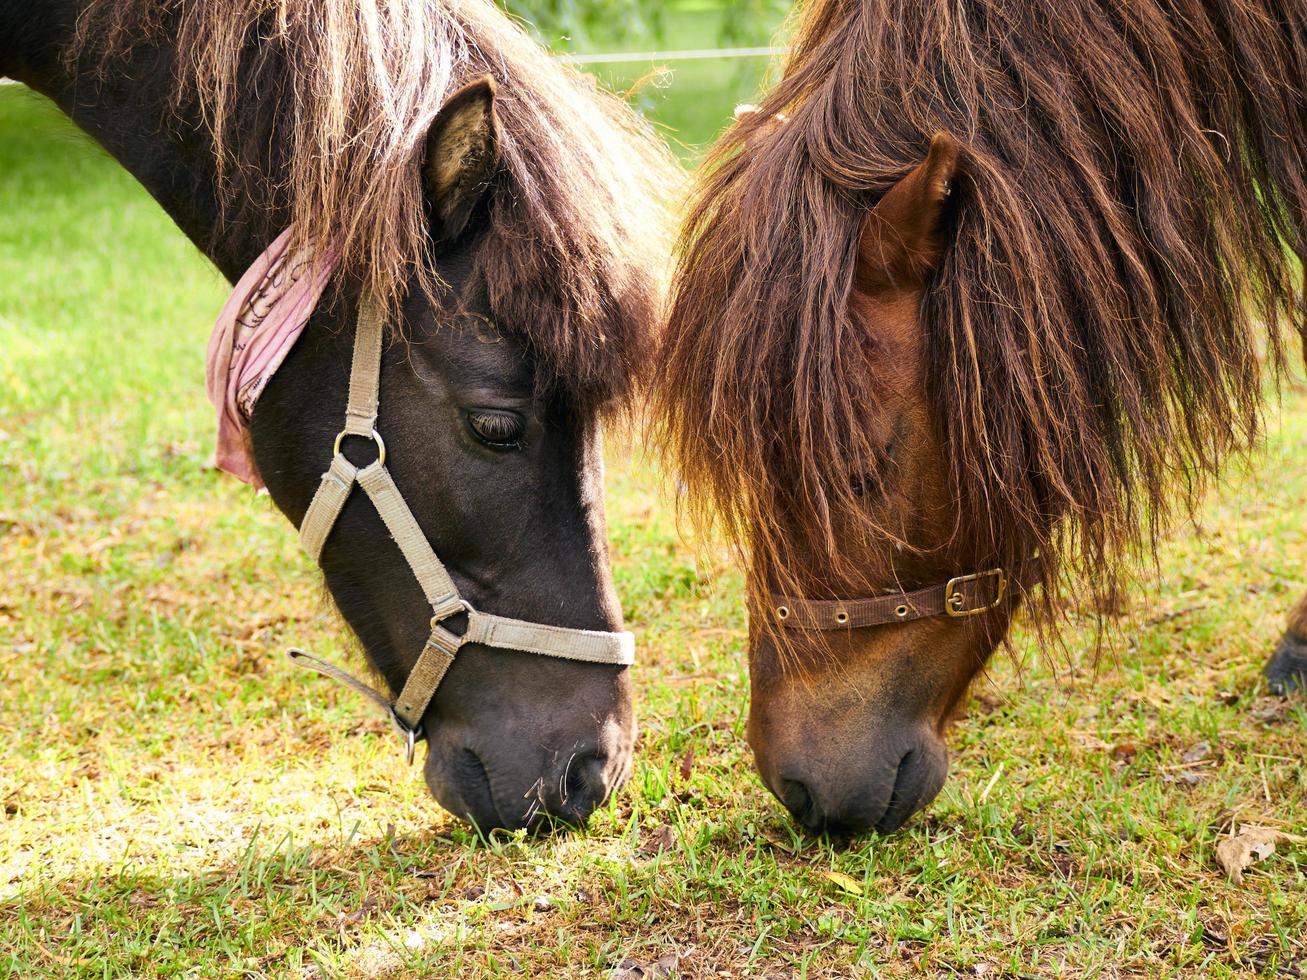 Quebec, Canadá, 14 de junio de 2015 - dos caballos comiendo hierba foto